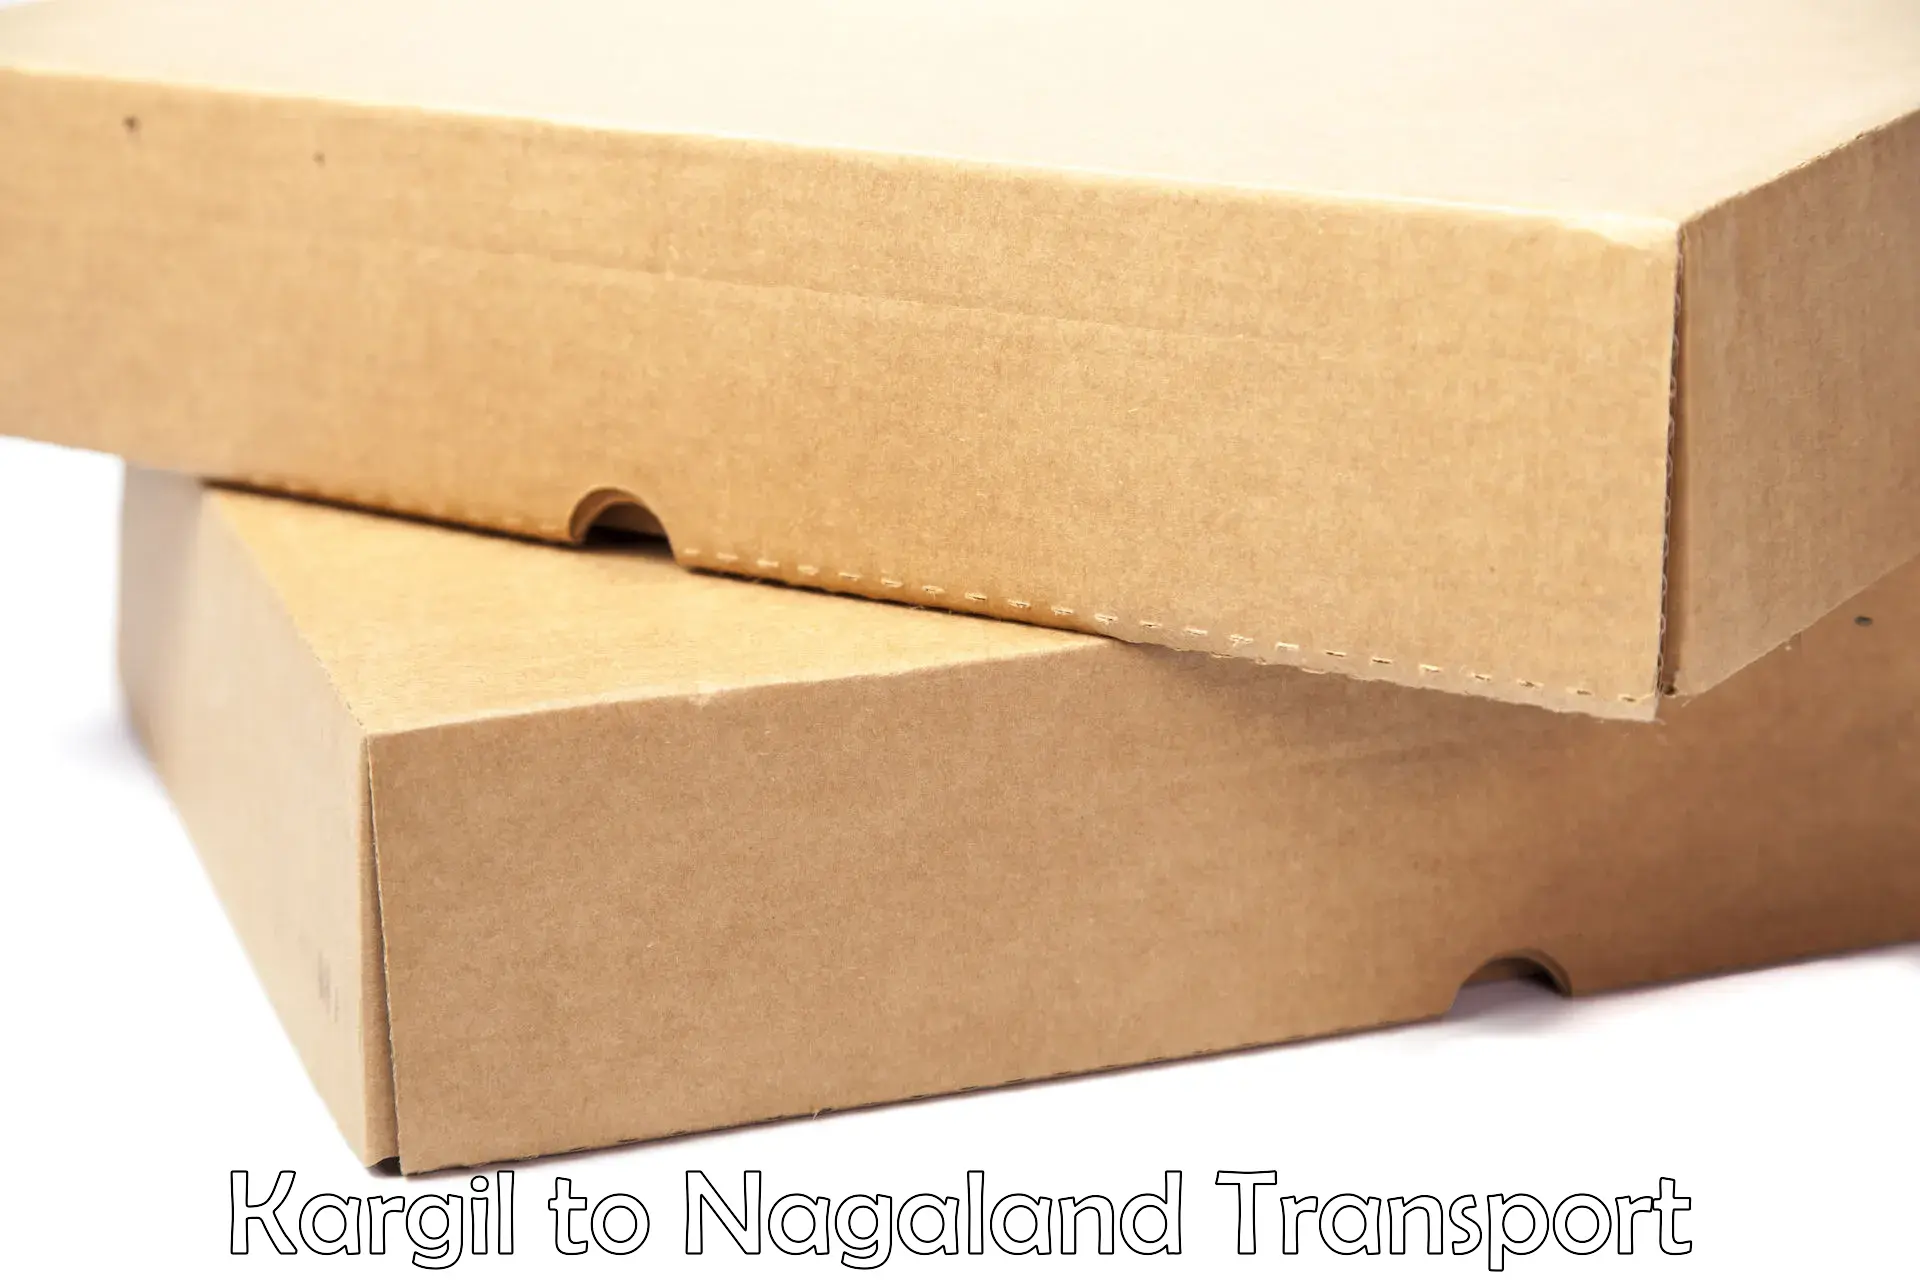 Vehicle parcel service Kargil to Nagaland